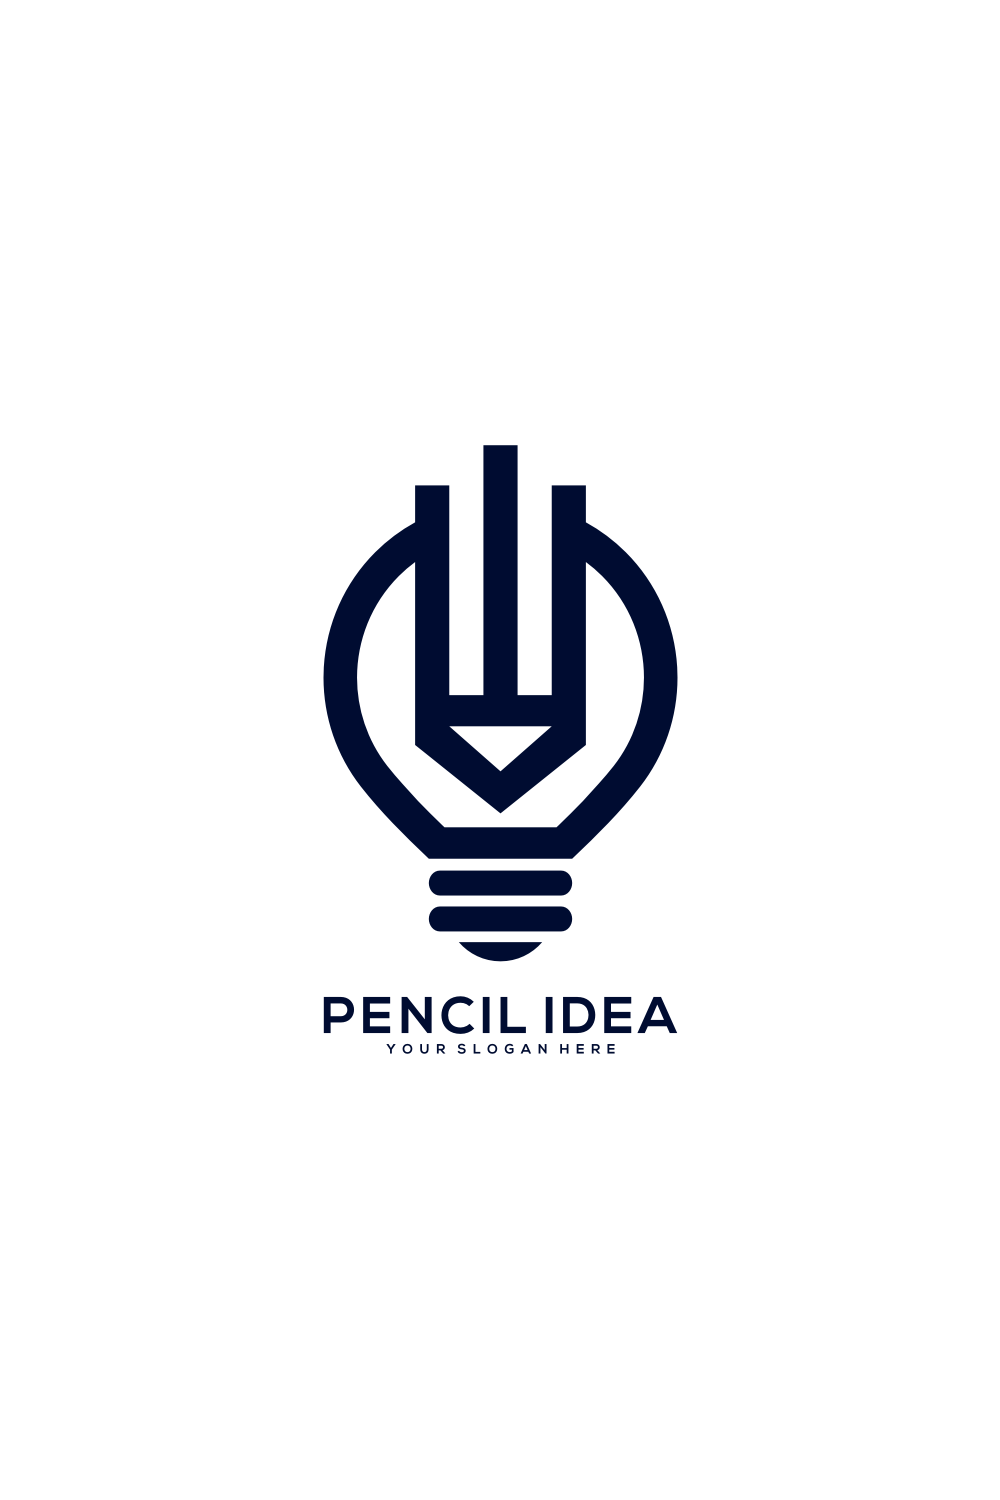 Pencil Lamp Idea Logo Vector Design Pinterest preview.